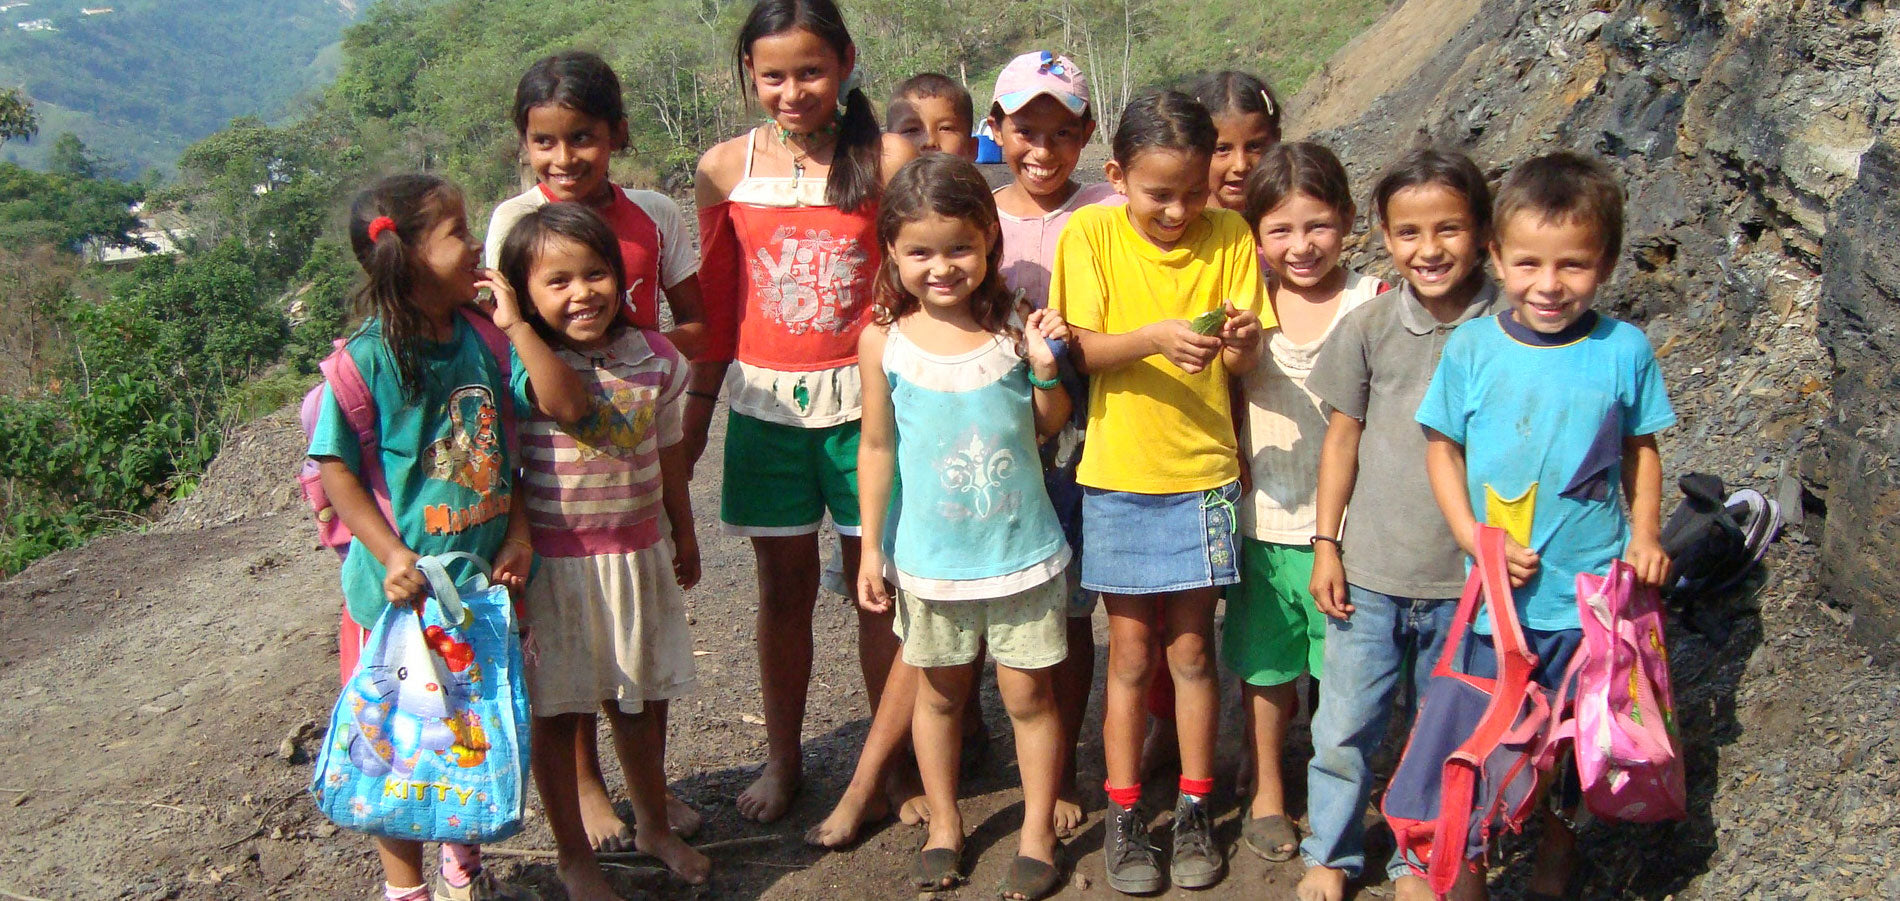 Der Bildungsfond MAXIM wird von der Kinderhilfsorganisation Fundación Pies Descalzos unterstützt, die von der kolumbianischen Sängerin Shakira 1997 ins Leben gerufen wurde. Die Nichtregierungsorganisation setzt sich für Kinder in Kolumbien ein, die in Armut leben beziehungsweise Opfer von Gewalt wurden.